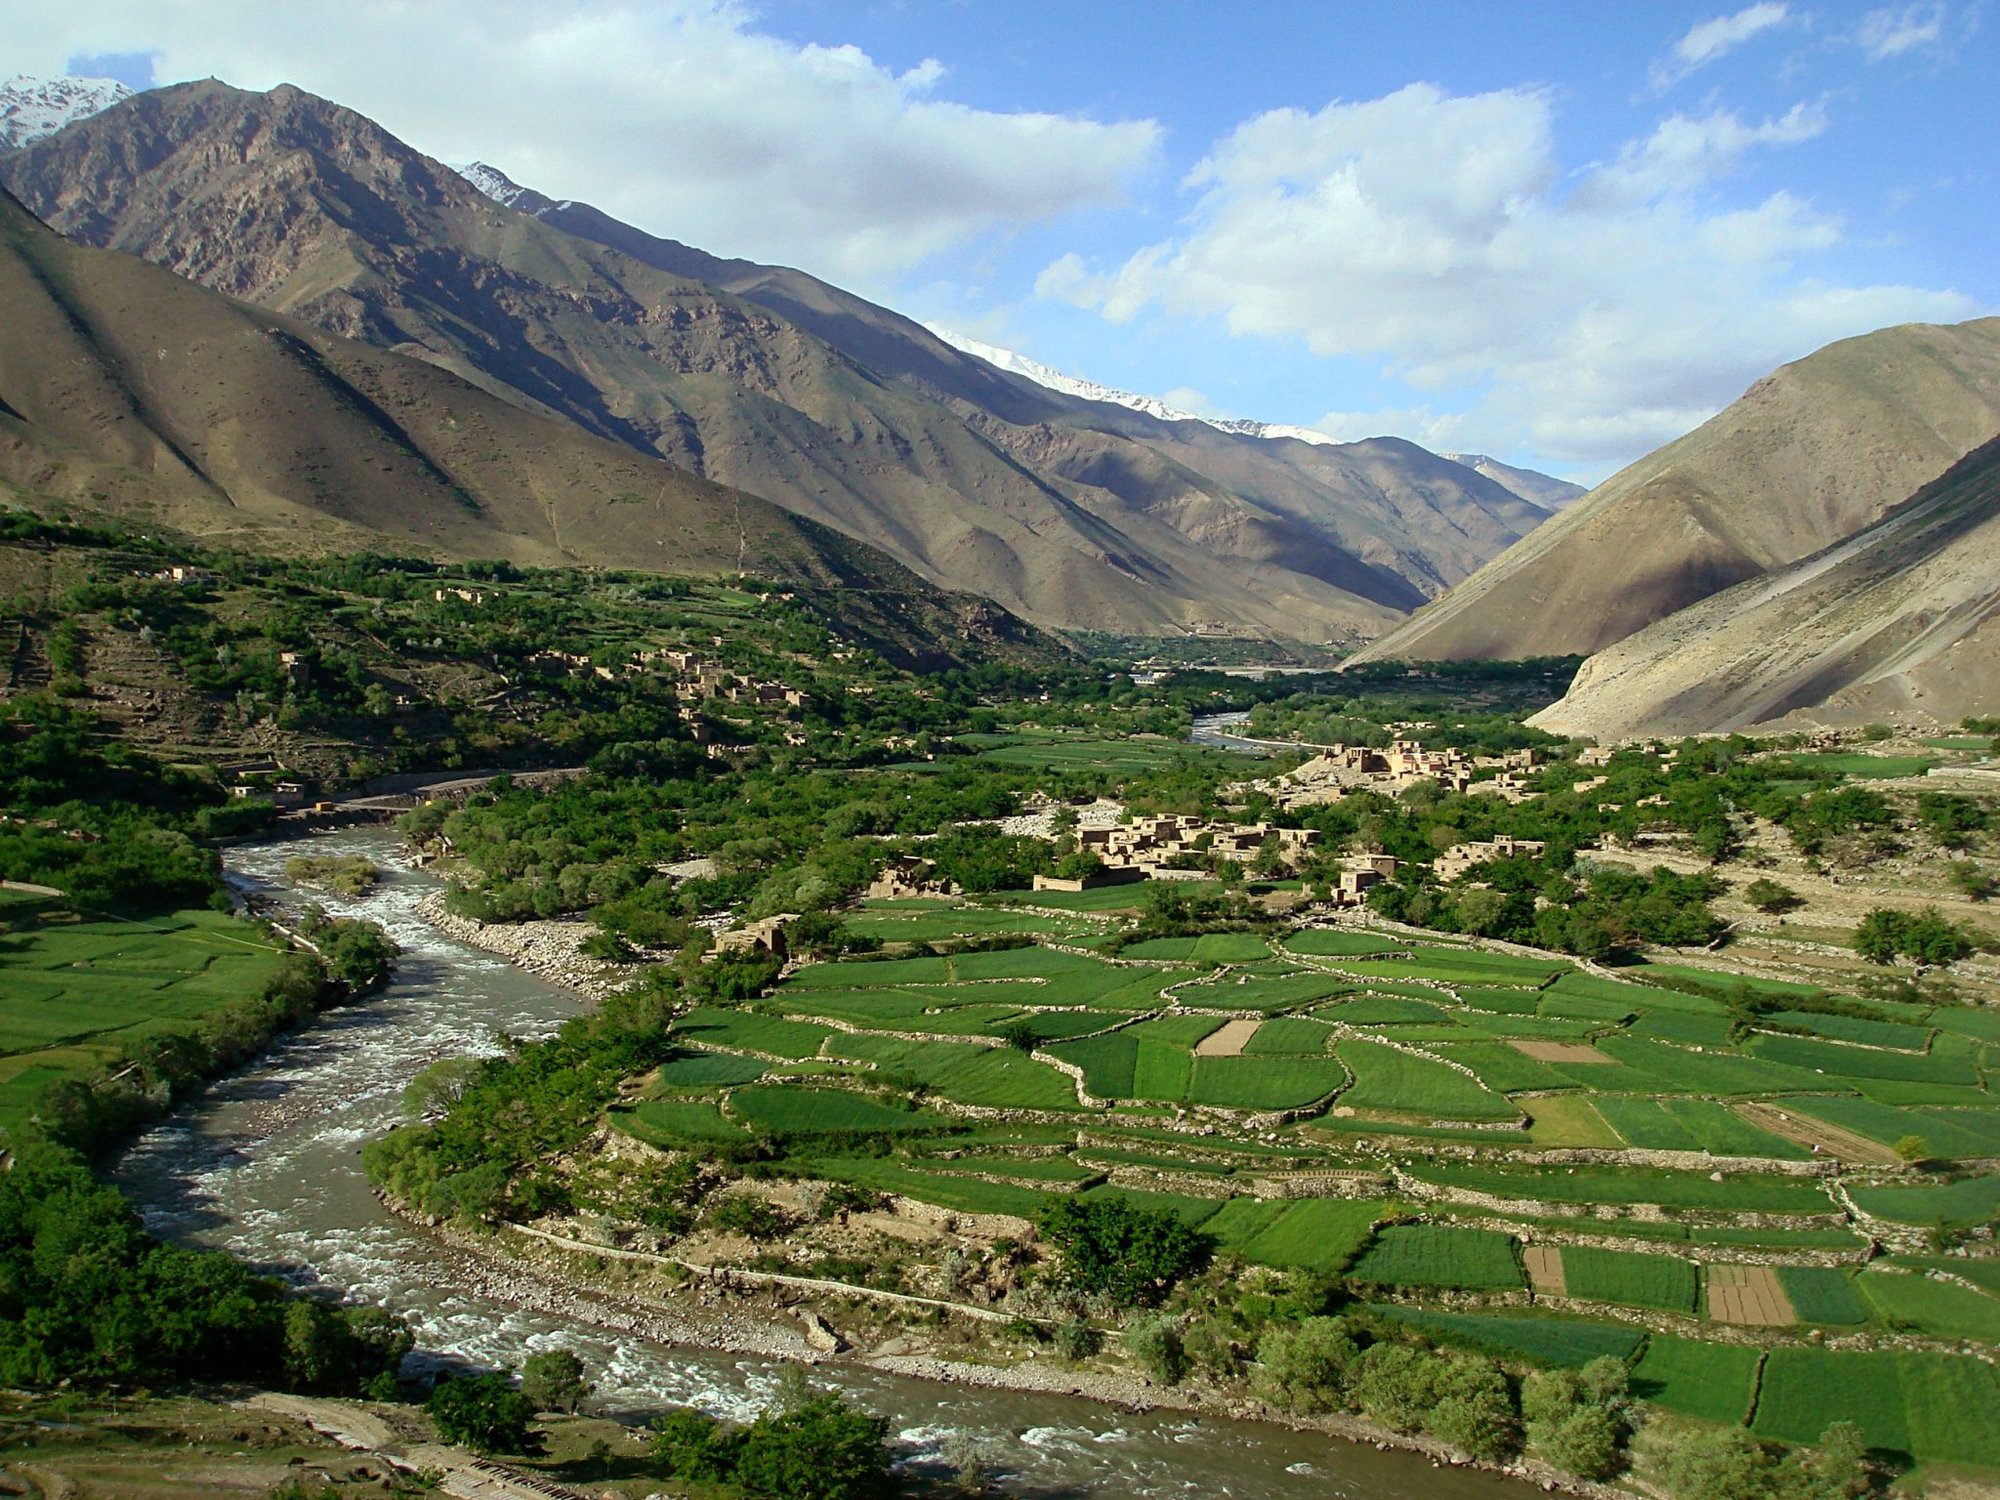 Taliban Panjshir